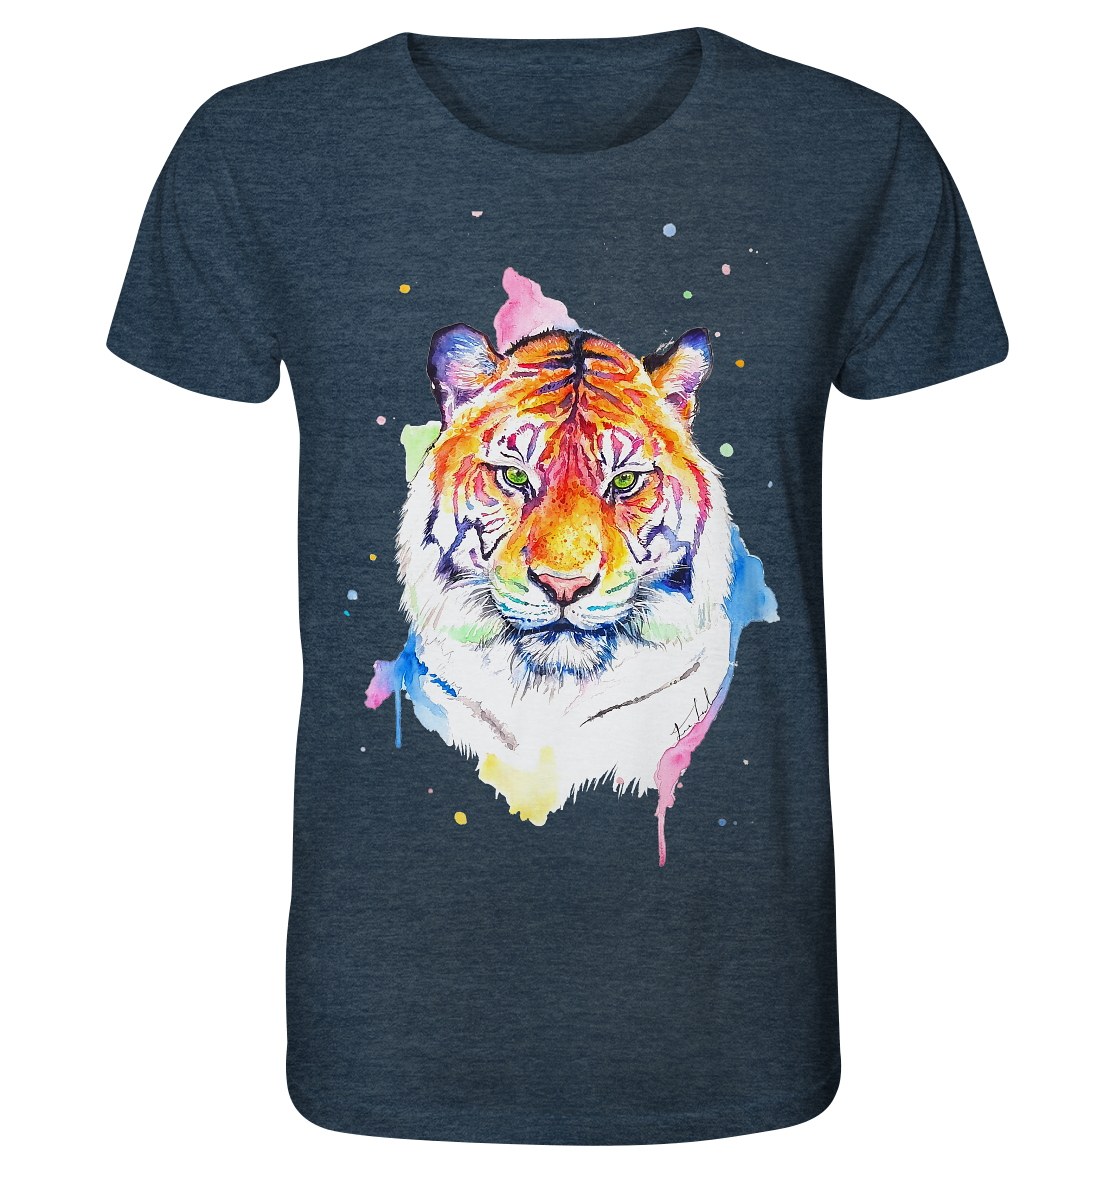 Bunter Tiger - Organic Shirt (meliert)